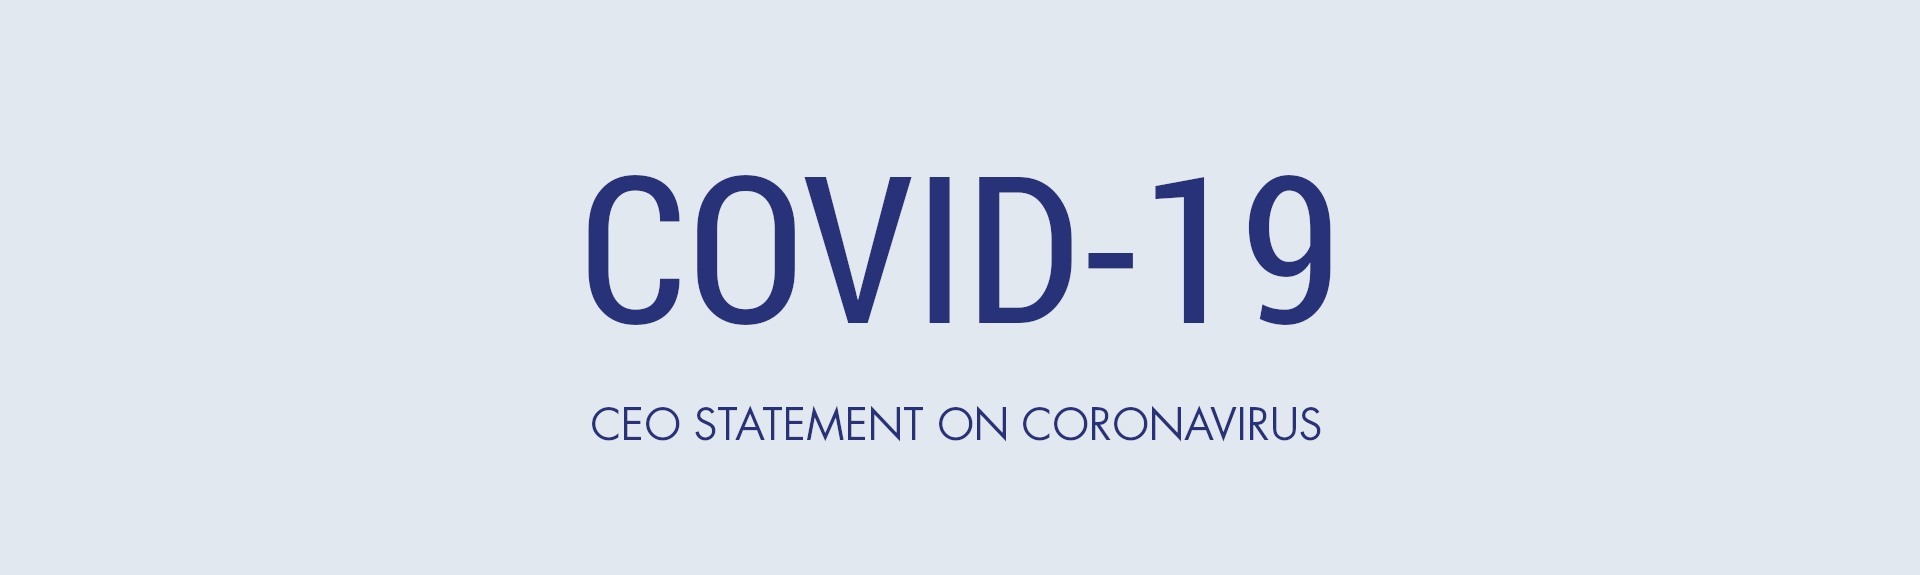 CEO statement on coronavirus